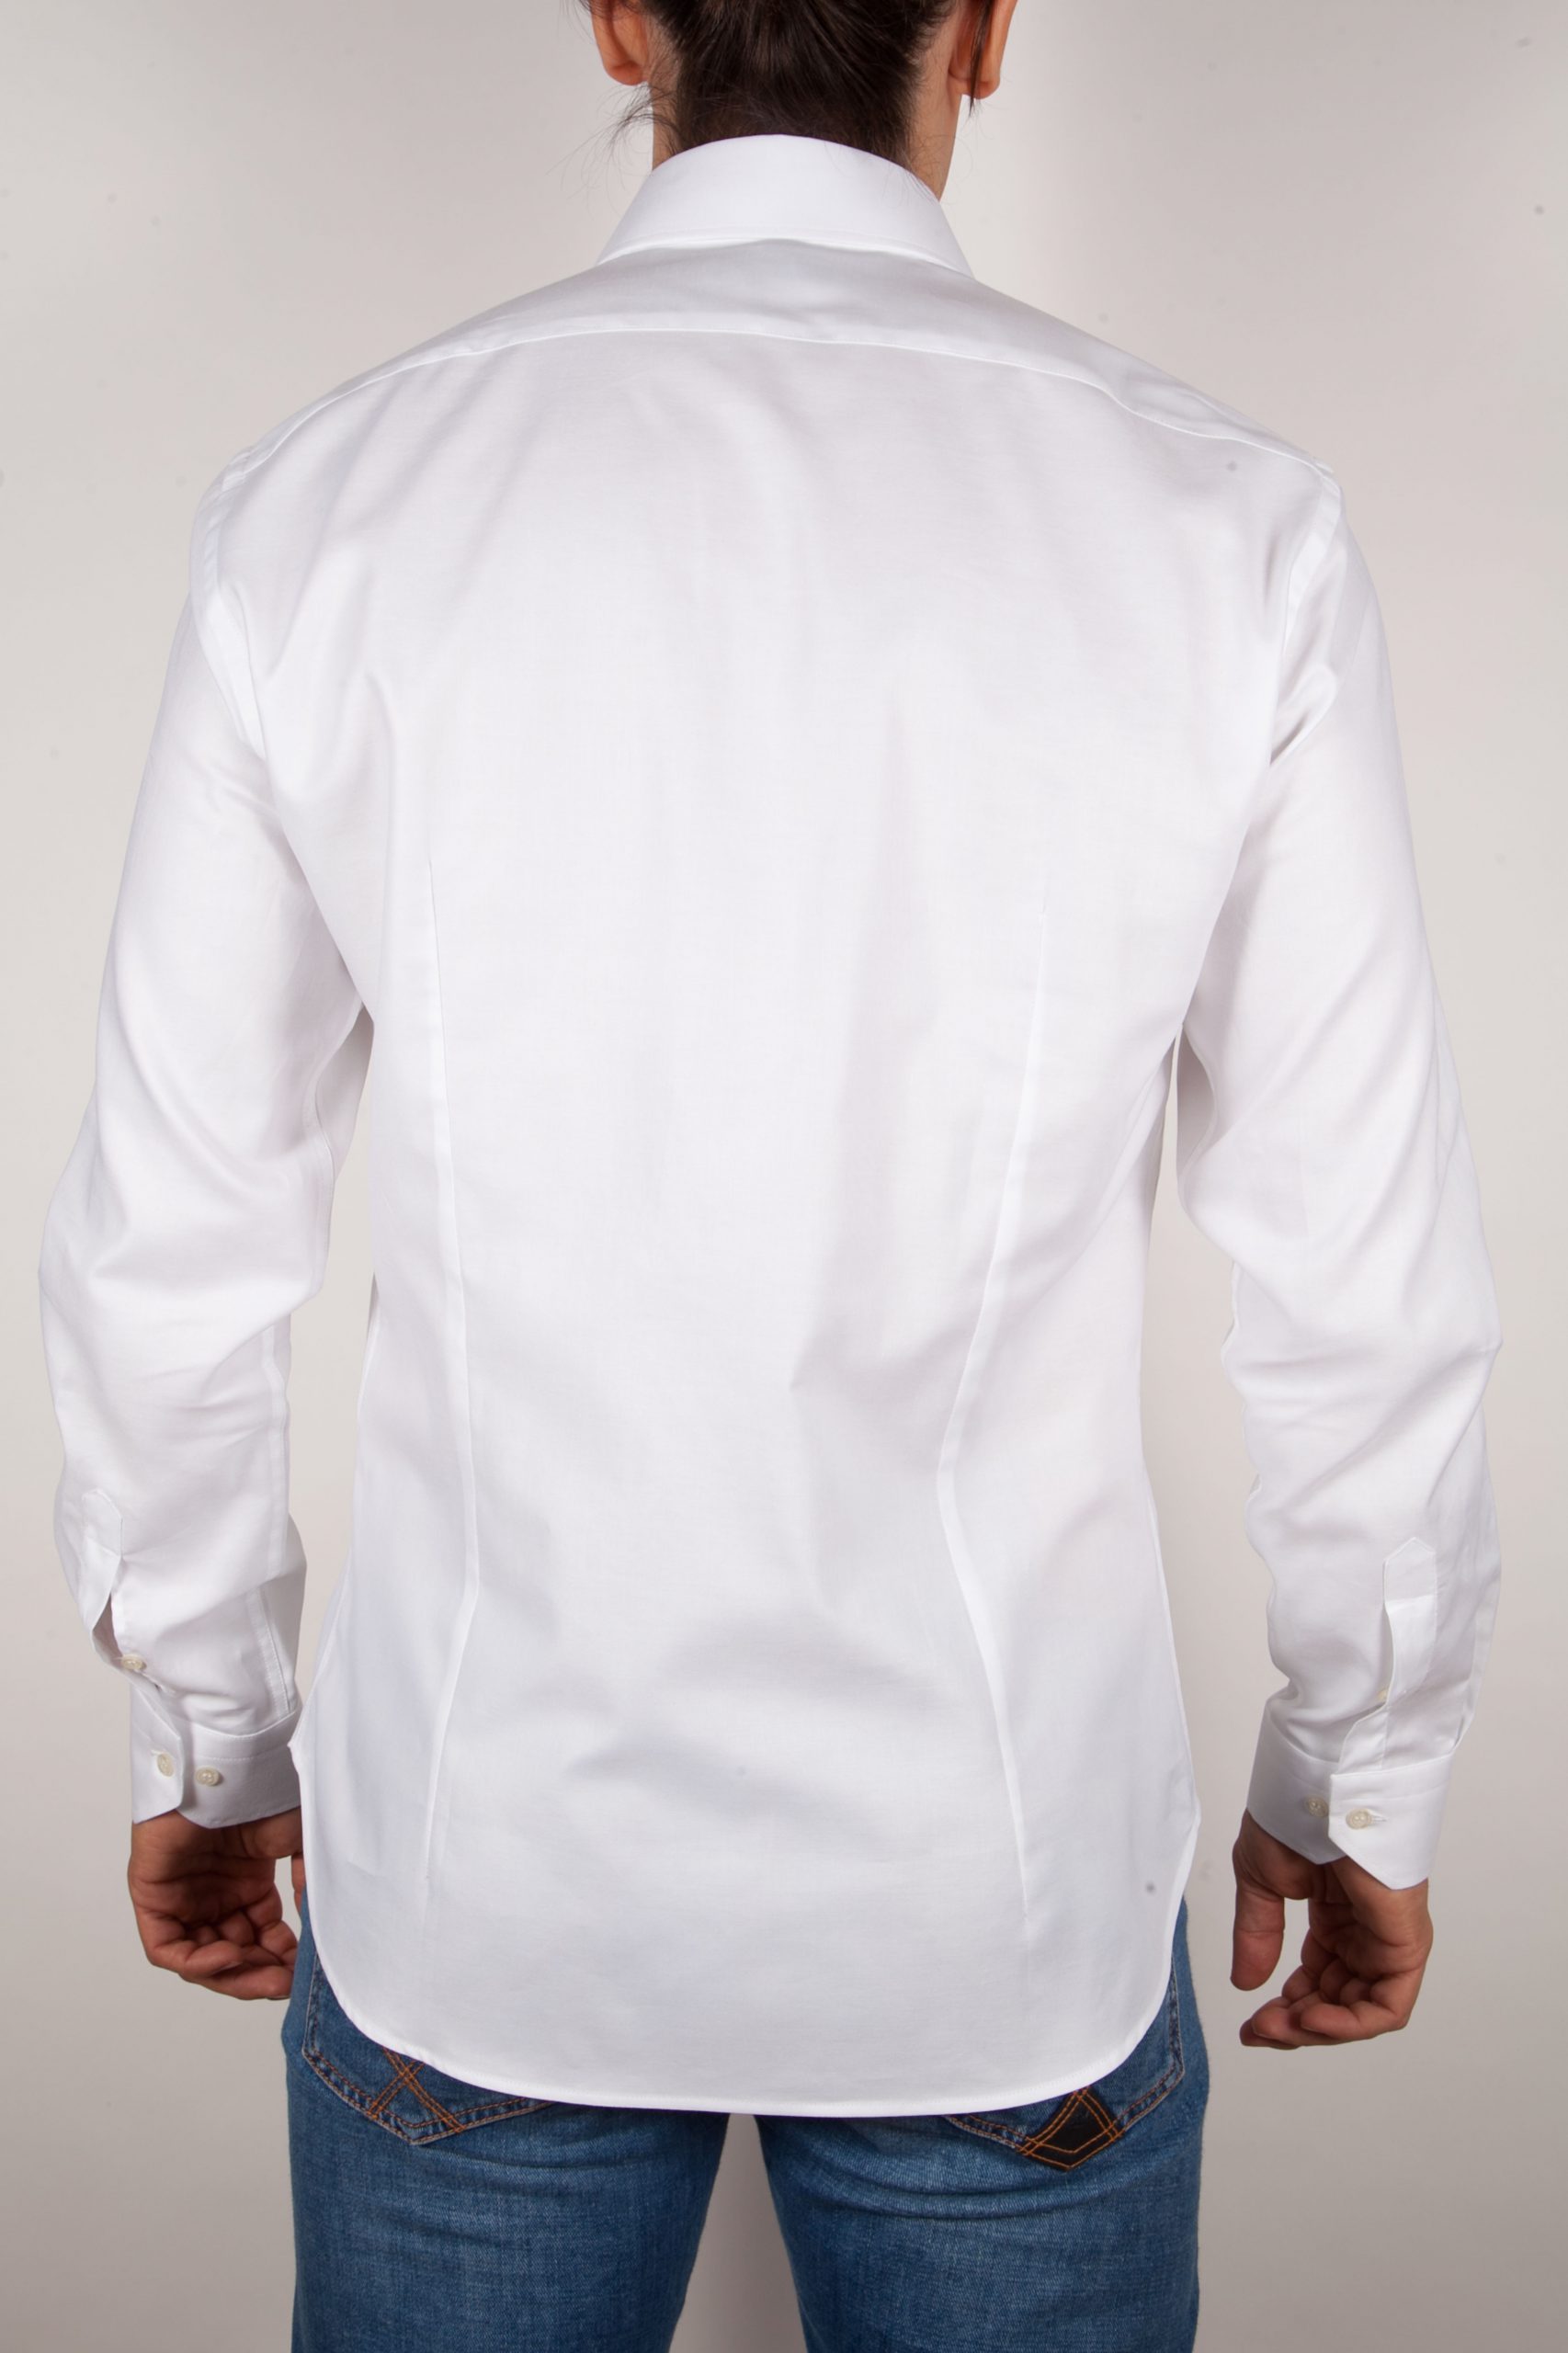 Fashion shirt, italian collar - Poggianti camicie